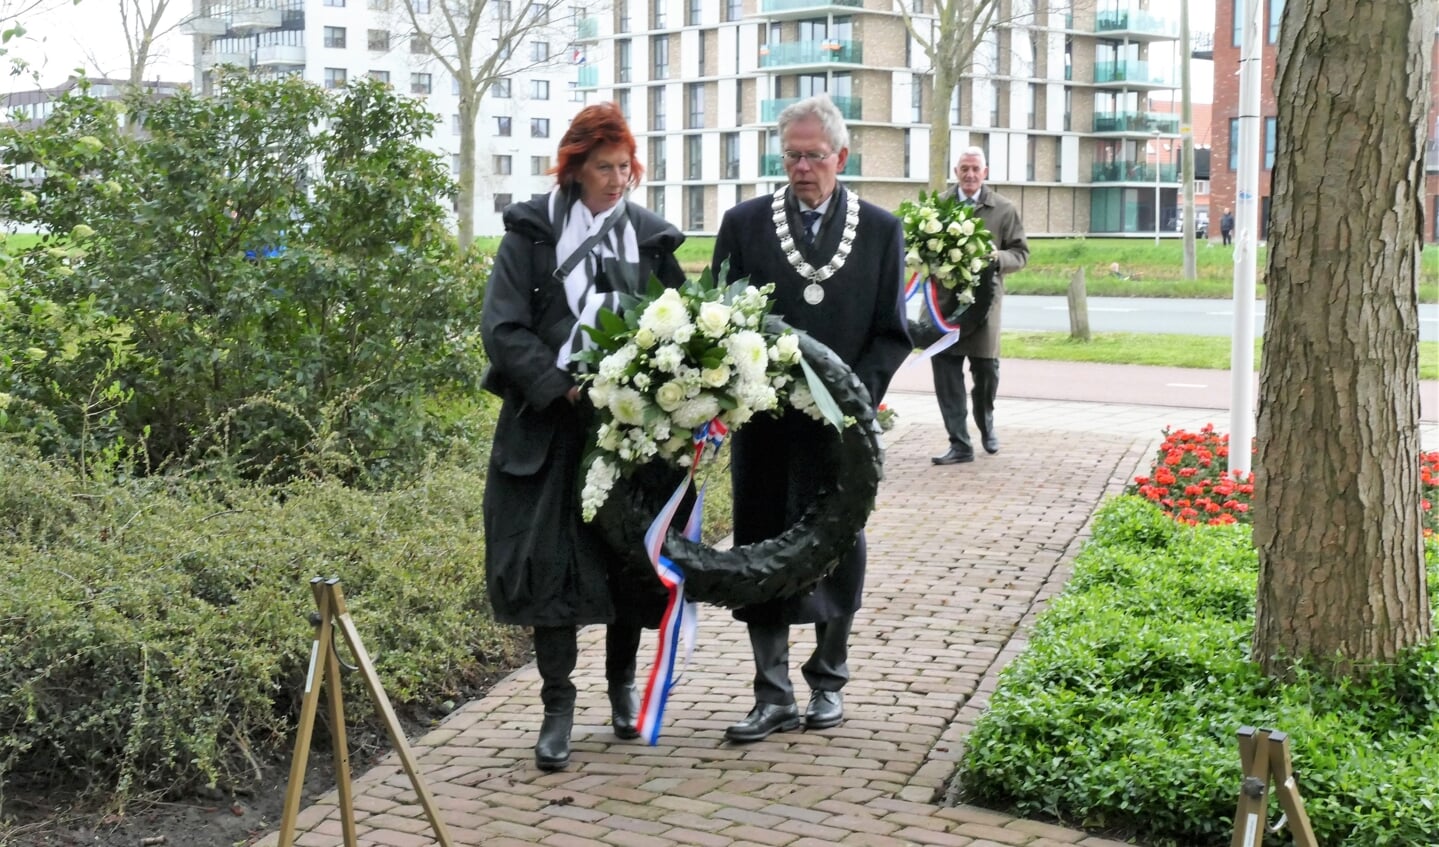 Burgemeester Don Bijl en zijn echtgenote met een krans op weg naar het monument aan de Jaagweg.